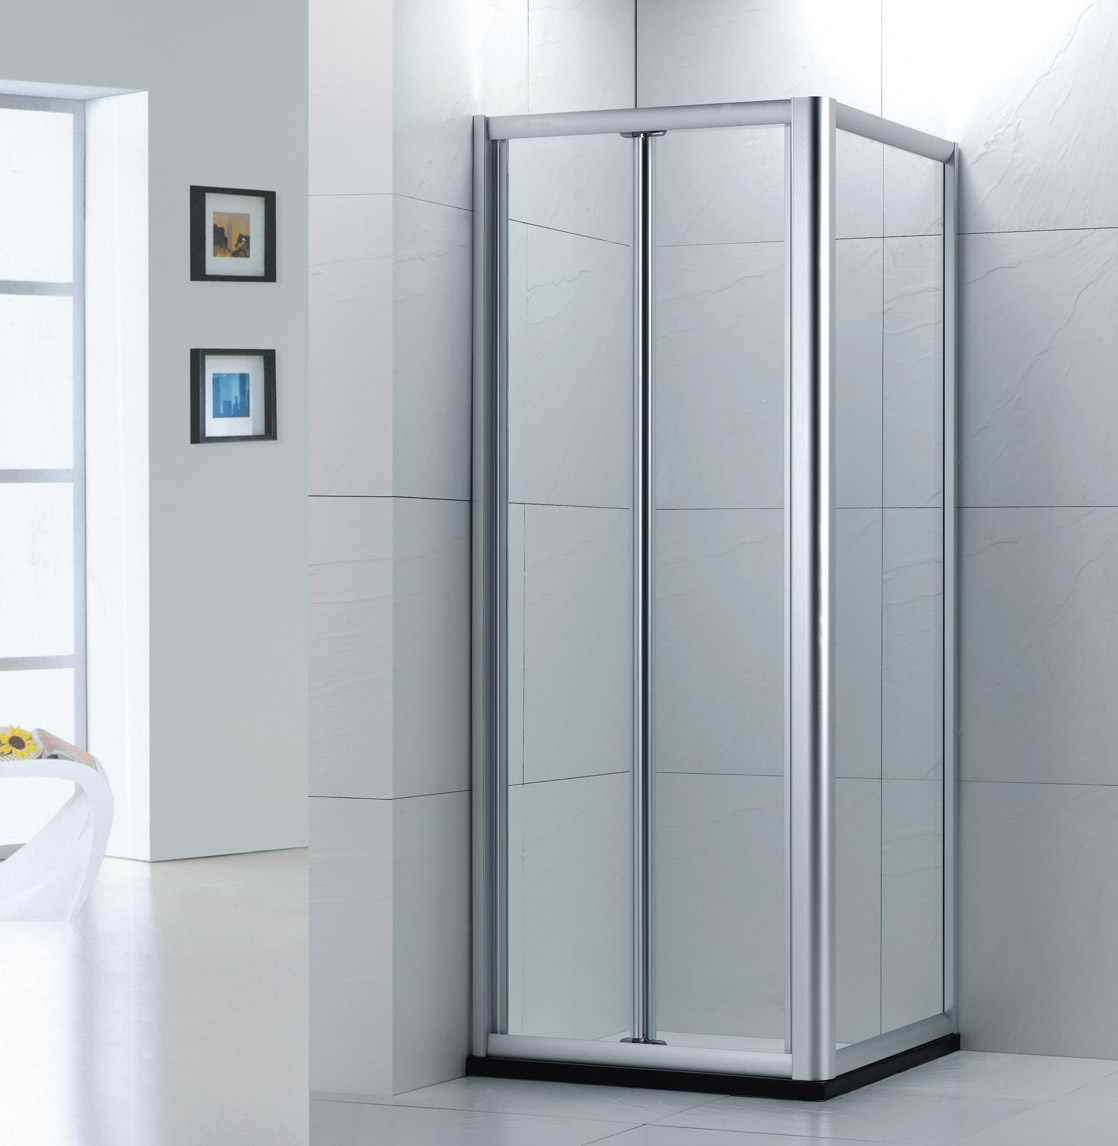 佛山浴房厂家直销砂银铝材方型加梗折叠式淋浴门LR005淋浴房